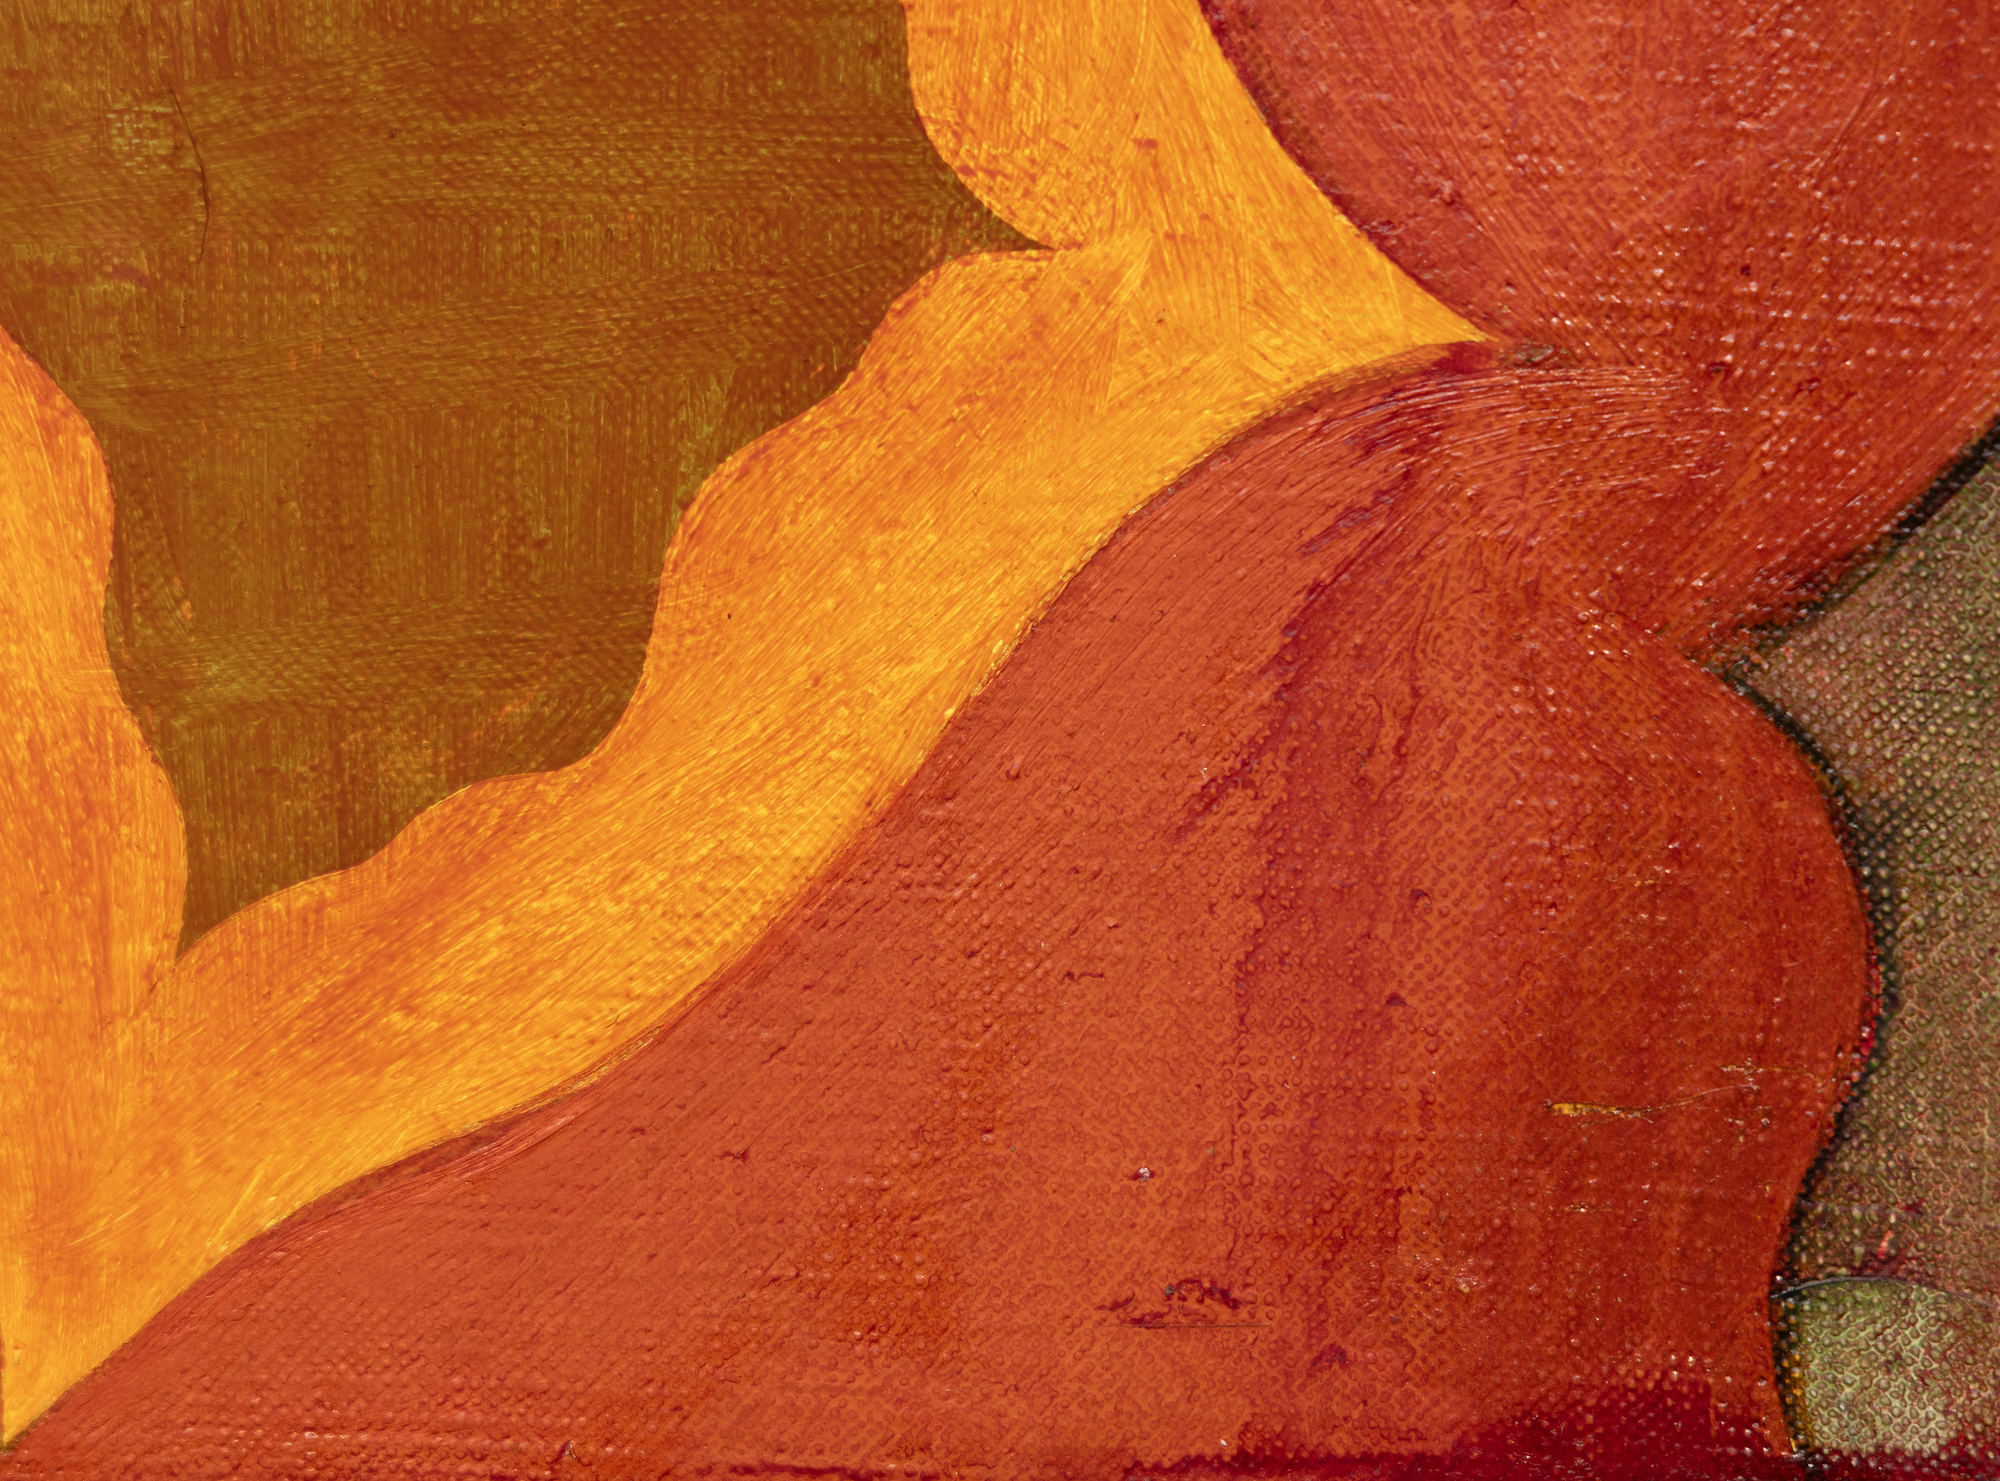 ولد توماس نزوكوفسكي في عام 1944، وأنشأ لوحات صغيرة غنية الثراء تعكس التأثيرات الثنائية لدعاة التعبير التجريديين ولاجئي باوهاوس الذين درس معهم في اتحاد كوبر. باستخدام فرشاة صغيرة ، ويشمل التعامل معه كشط وفرك قبالة الطلاء بطرق تسجيل في العمل النهائي. طور مفردات مميزة واسعة النطاق تنشر أشكالًا هندسية تشبه الأشكال الحيوية في أنظمة ألوان متنوعة ومجموعة واسعة من الجمعيات: أرضيات البلاط ، إلى مجموعات الخلايا ، إلى الهندسة المعمارية والفضاء الخارجي. في كثير من الأحيان ، يتم تقطيرها من ذكرياته وتجاربه الخاصة. نوزكوفسكي على هذه اللوحة المحددة (بدون عنوان، 1994) قائلاً إنها تعكس انبهاره بالمشاهد الأسطورية المرسومة على لوحات الصدر الكاسونية الناطورة في عصر النهضة. وقال انه نطق أفضل واحد من ثلاثة أو أربعة 15 "× 30" لوحات من هذه السلسلة. تم التعامل مع Nozkowski لسنوات عديدة من قبل معرض بيس. توفي في عام 2019.